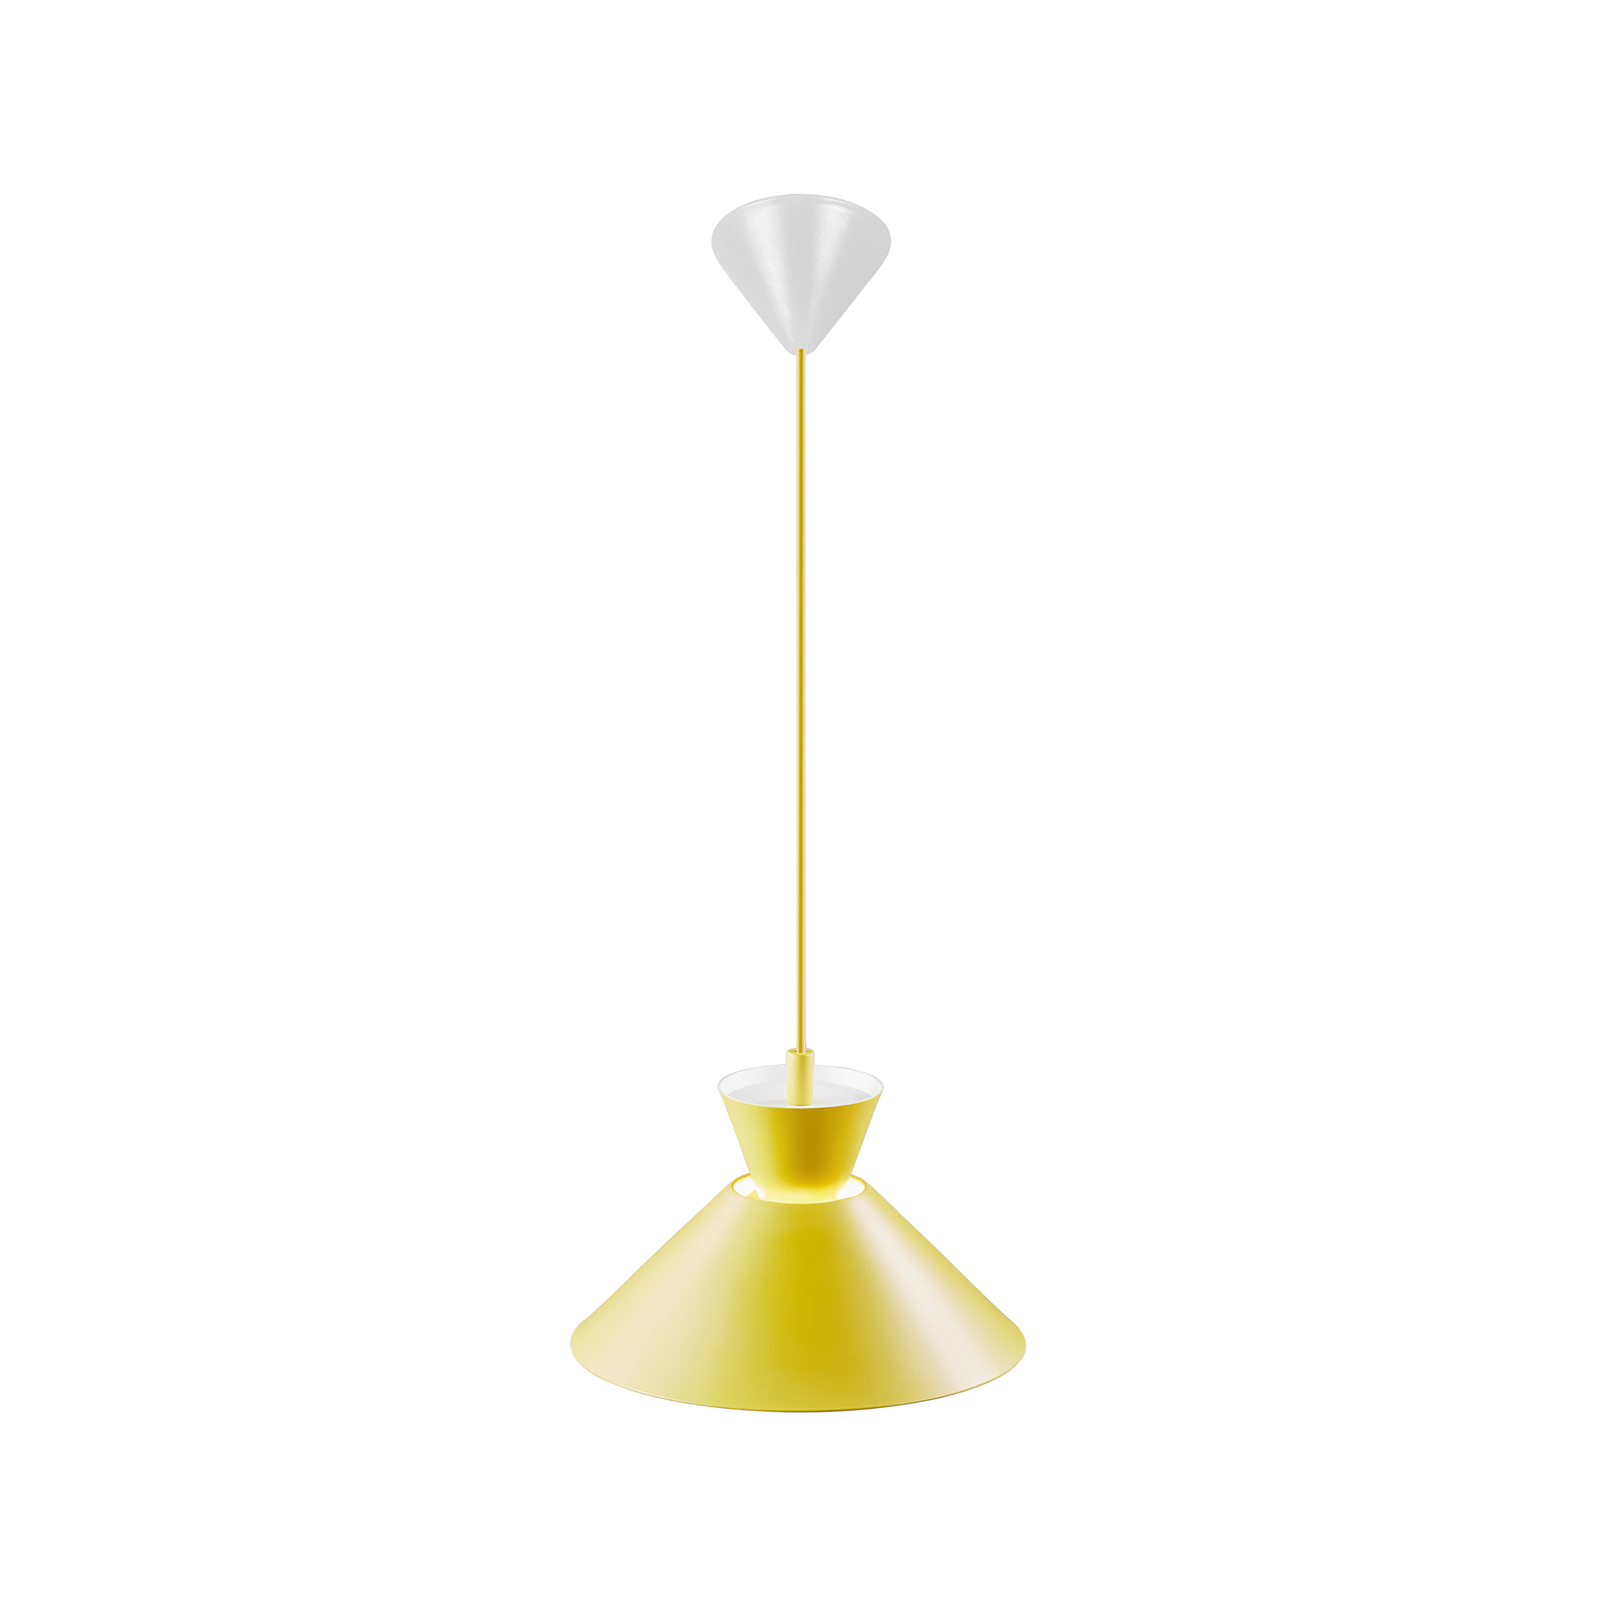 Tárcsás függőlámpa fém ernyővel, sárga, Ø 25 cm